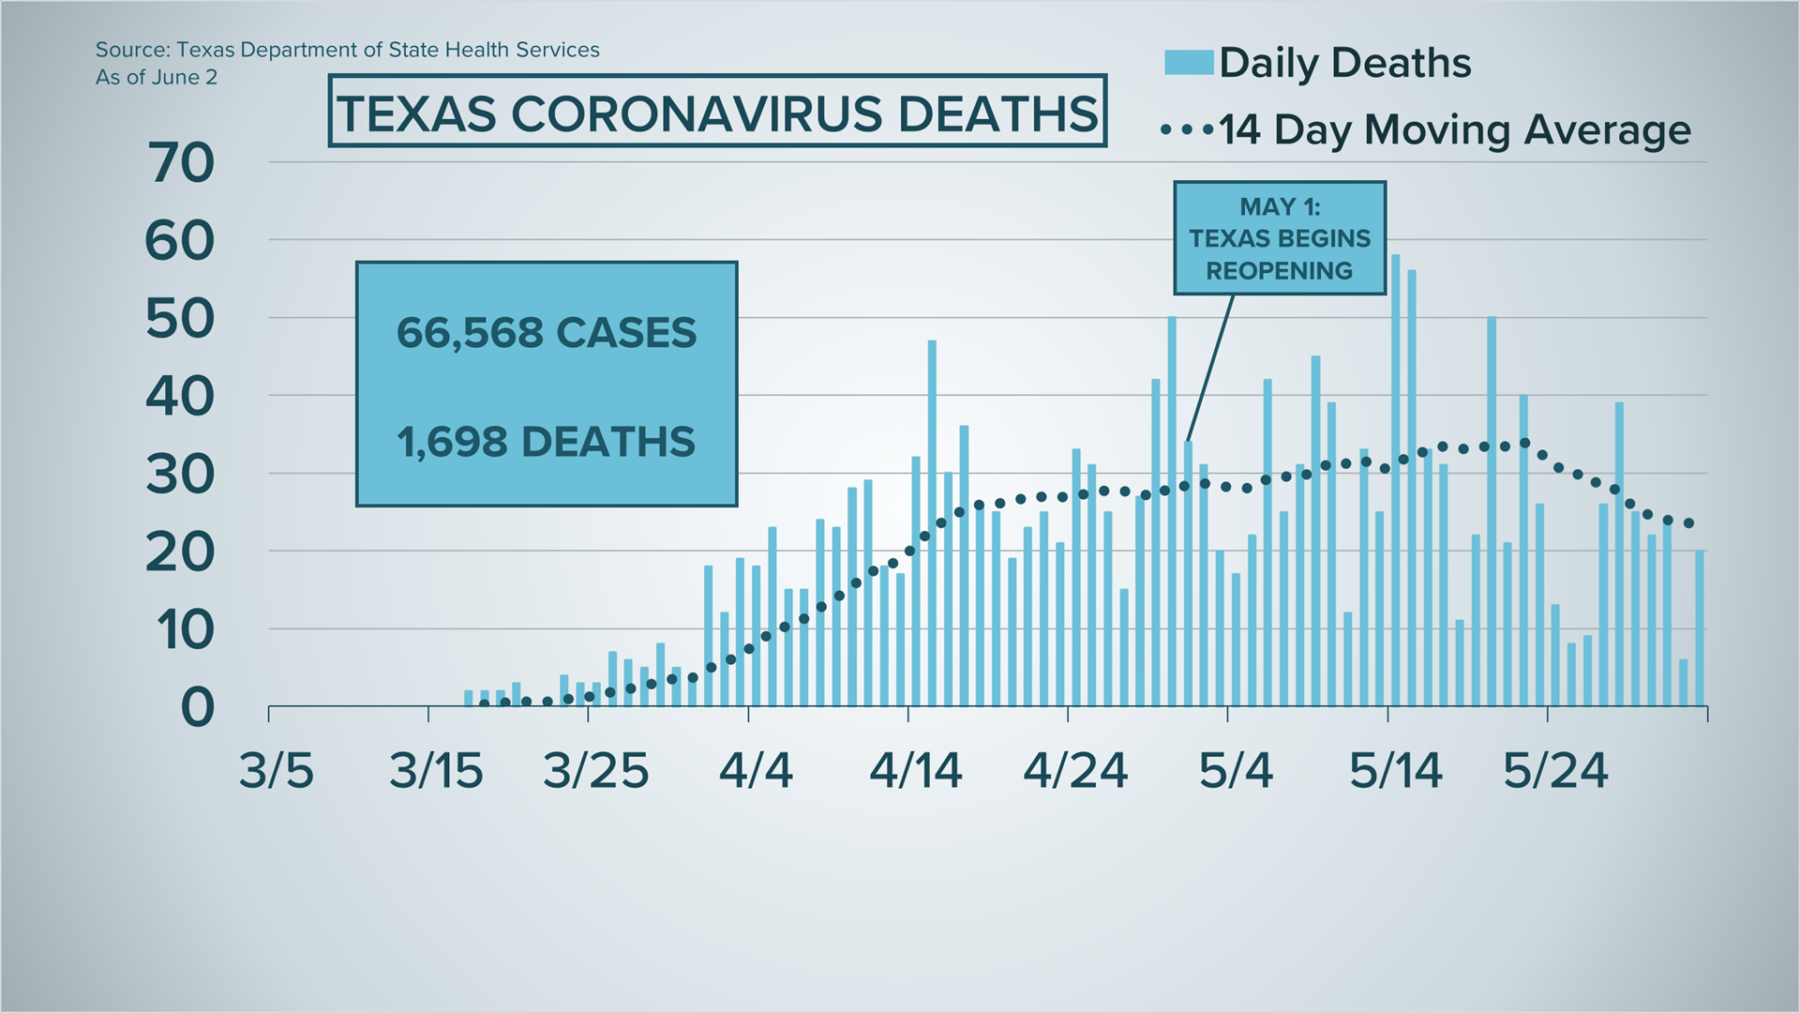 Texas Coronavirus Deaths